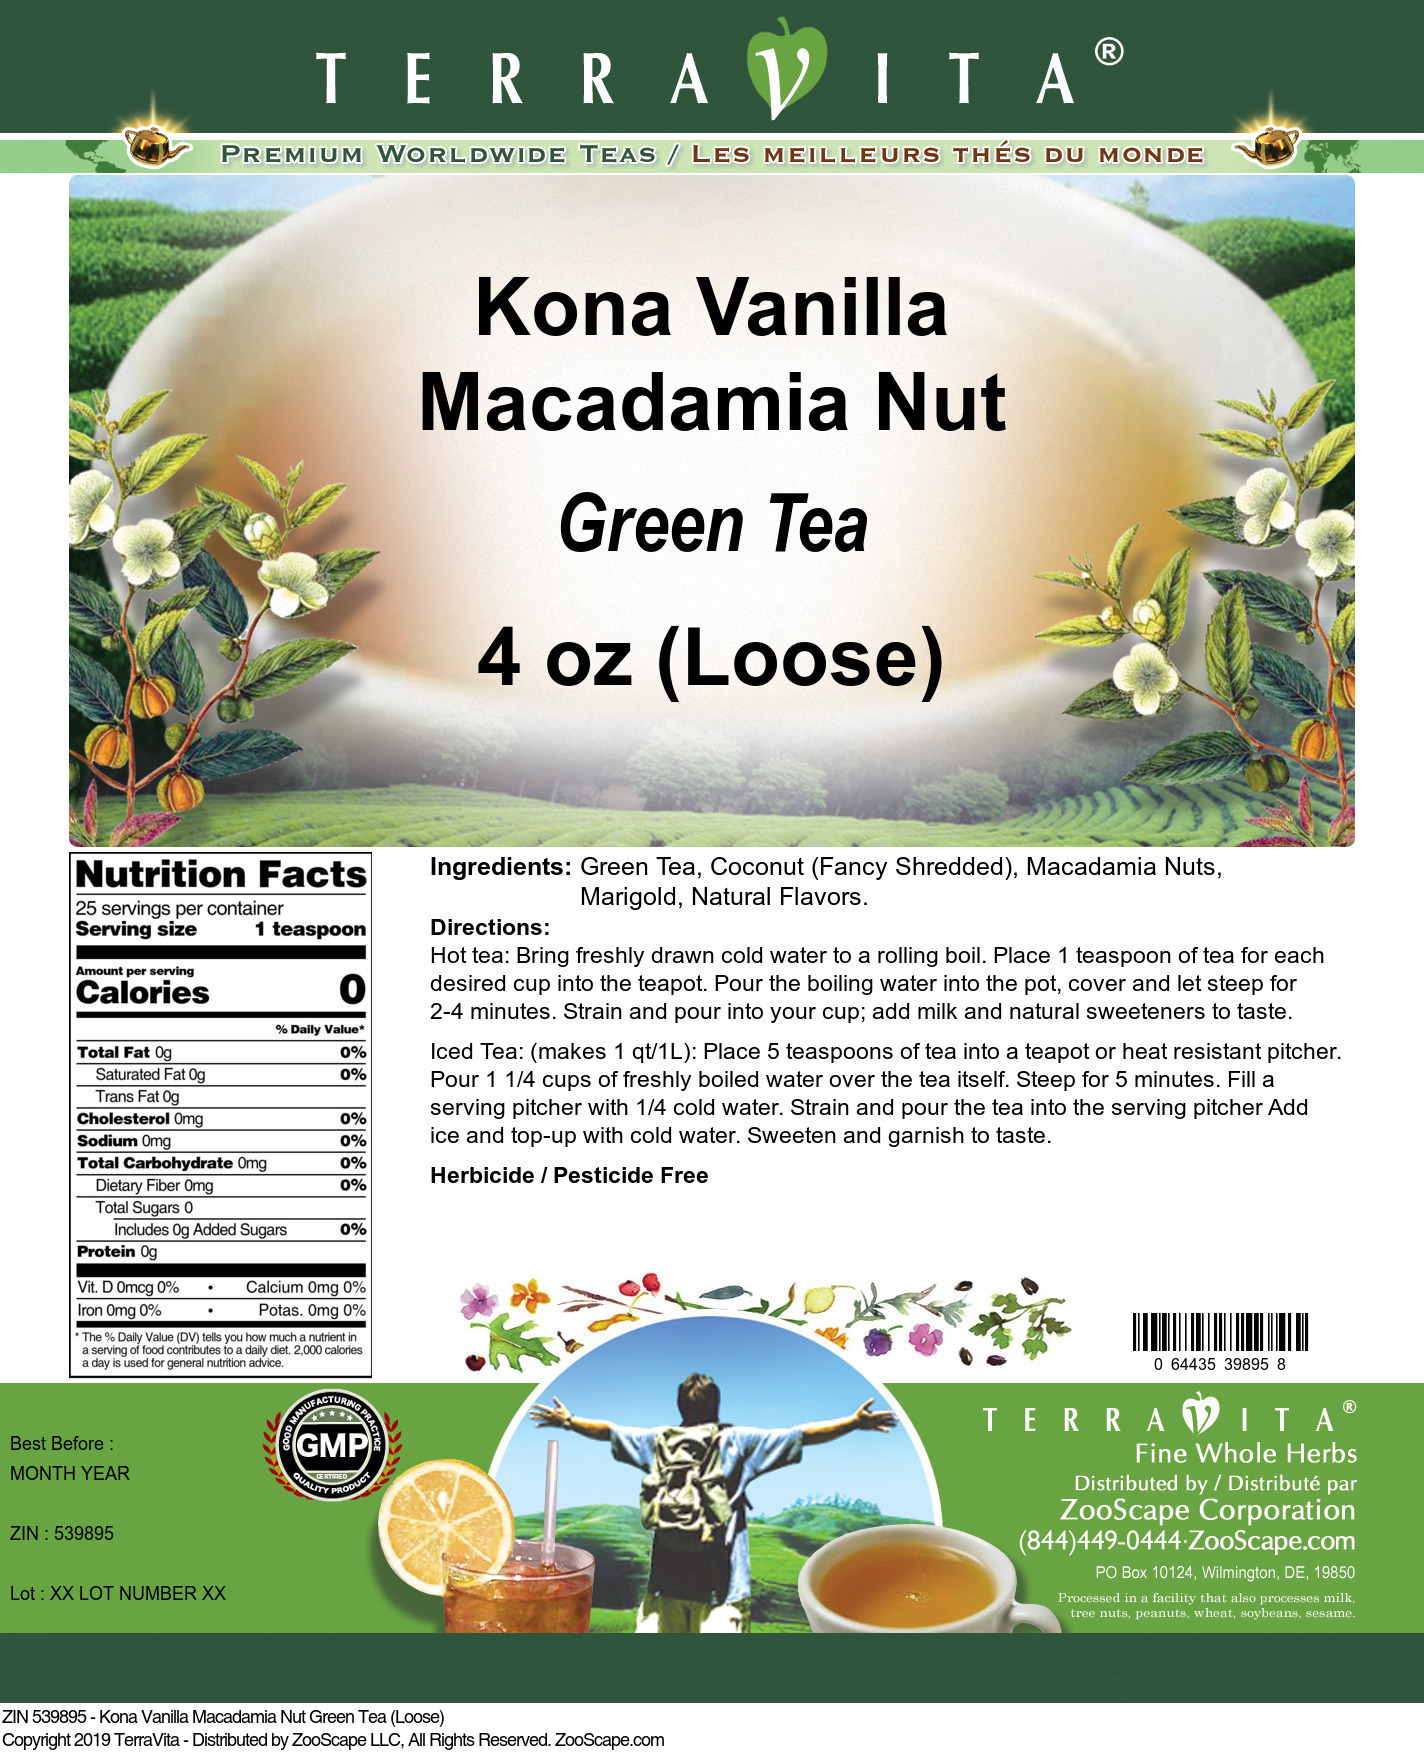 Kona Vanilla Macadamia Nut Green Tea (Loose) - Label